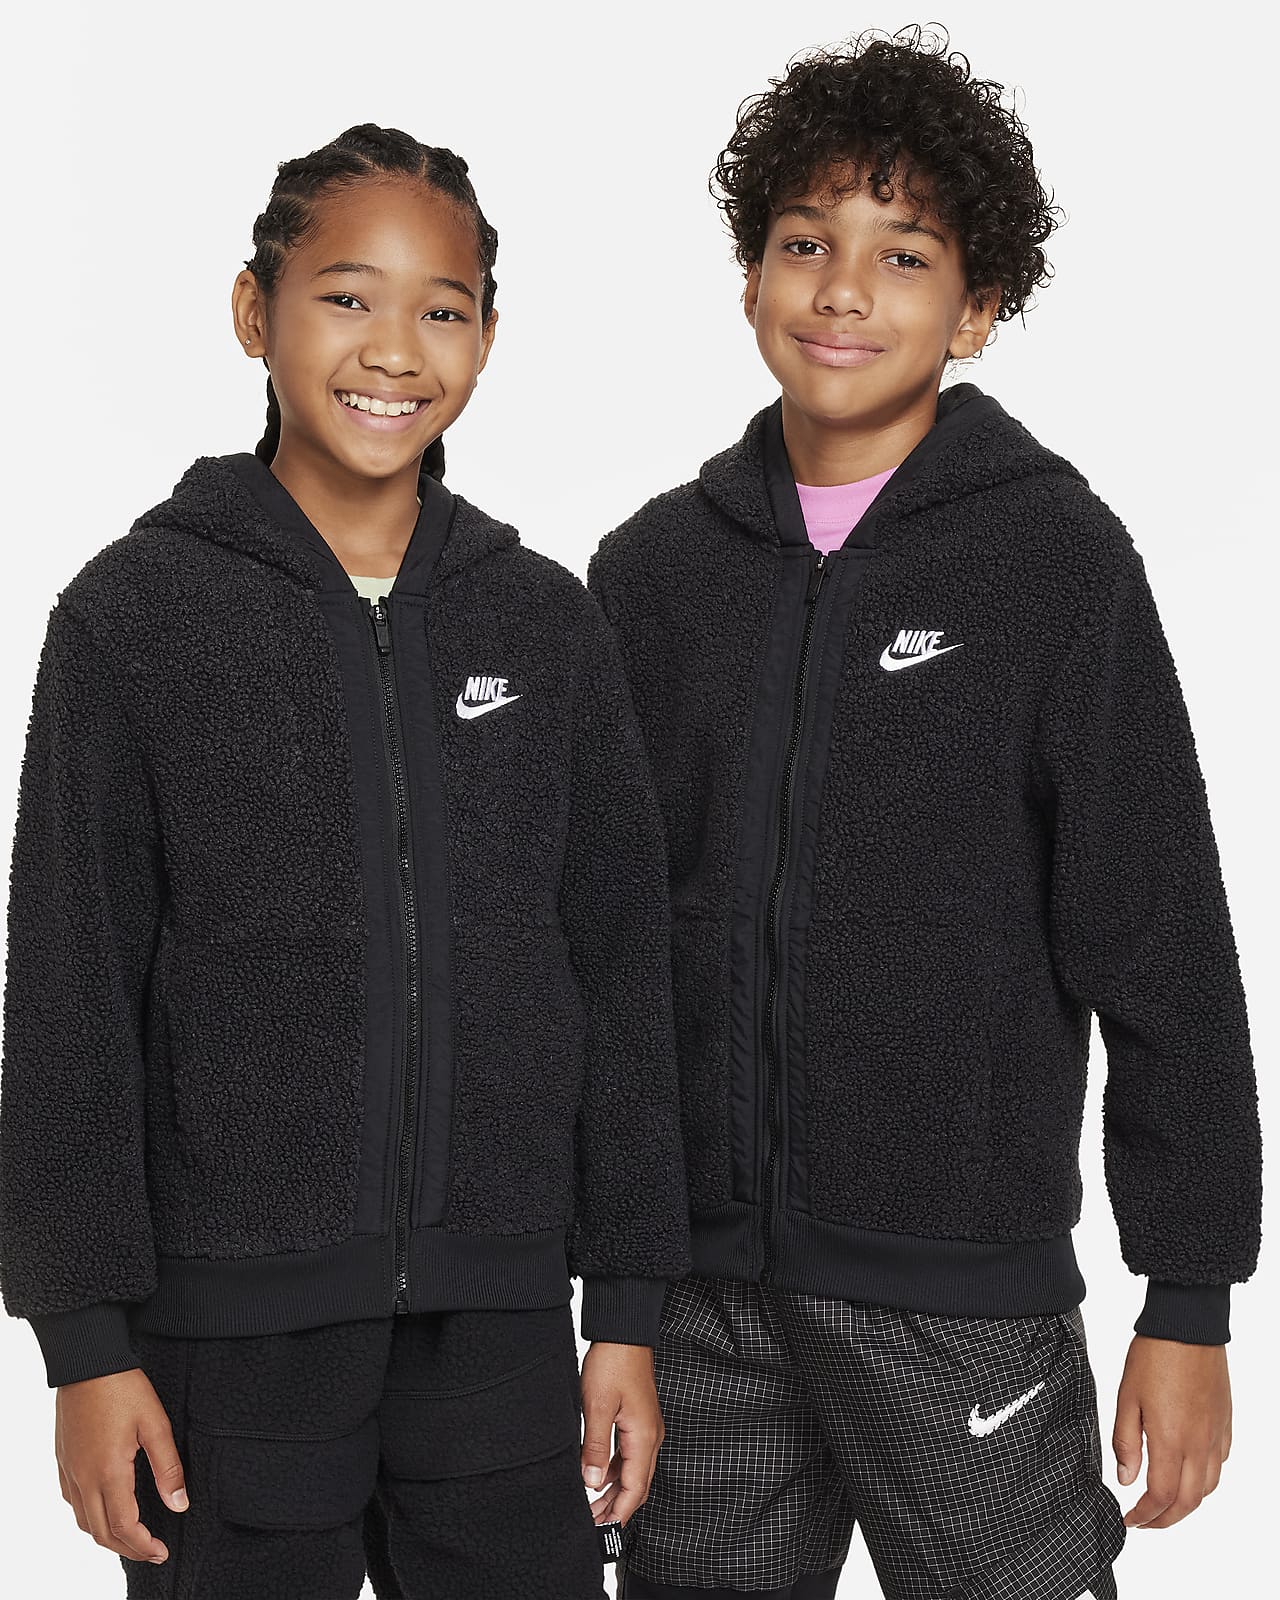 Club mit Kinder. durchgehendem Hoodie Nike Nike für Sportswear winterfester Fleece DE Reißverschluss ältere